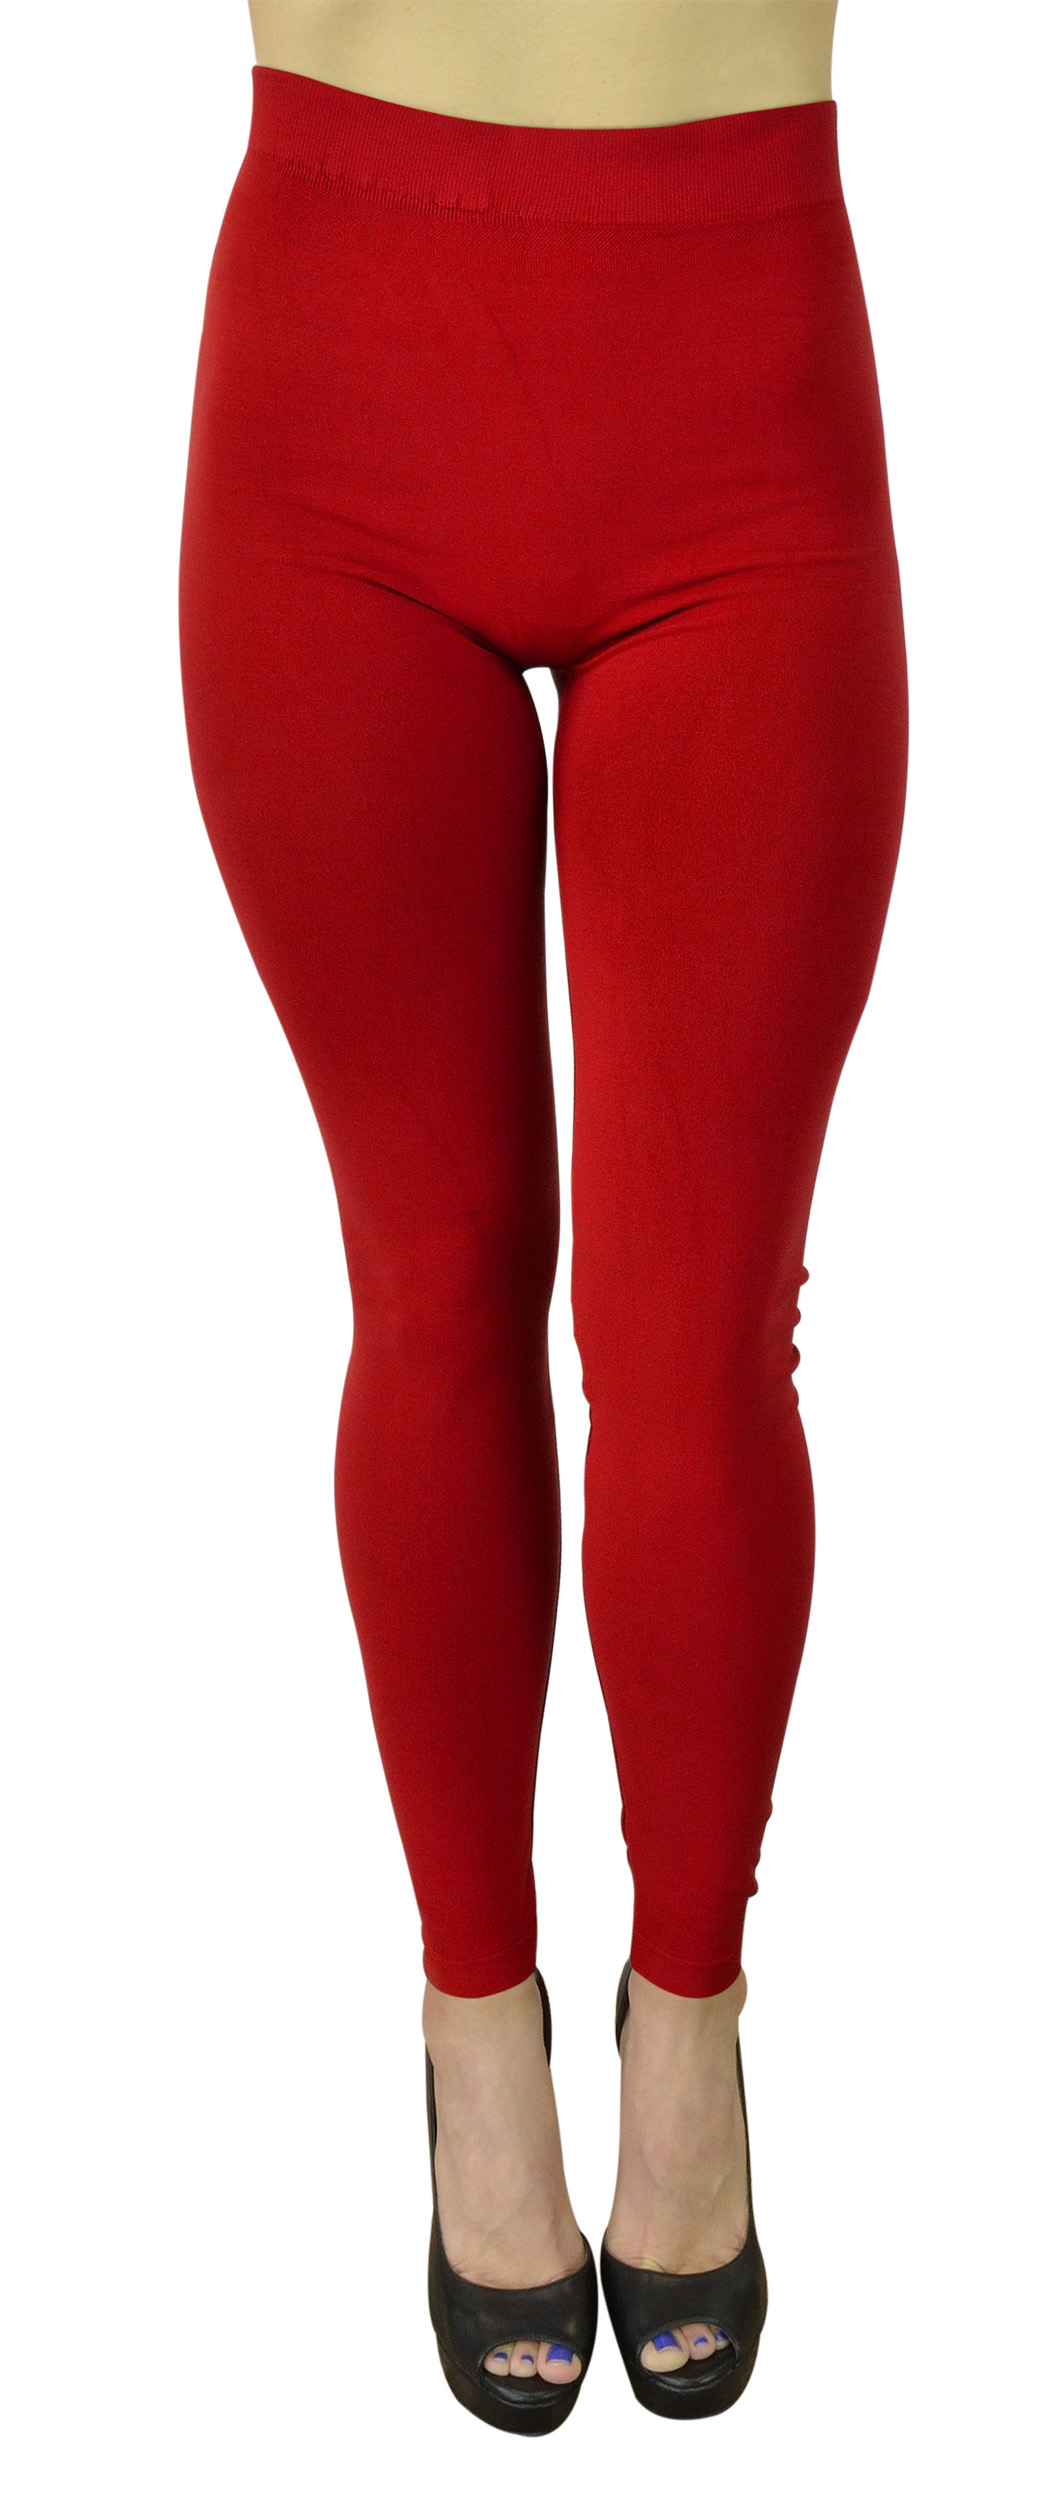 Belle Donne Women's Solid Color Warm Winter Kermo Fleece Legging - Red